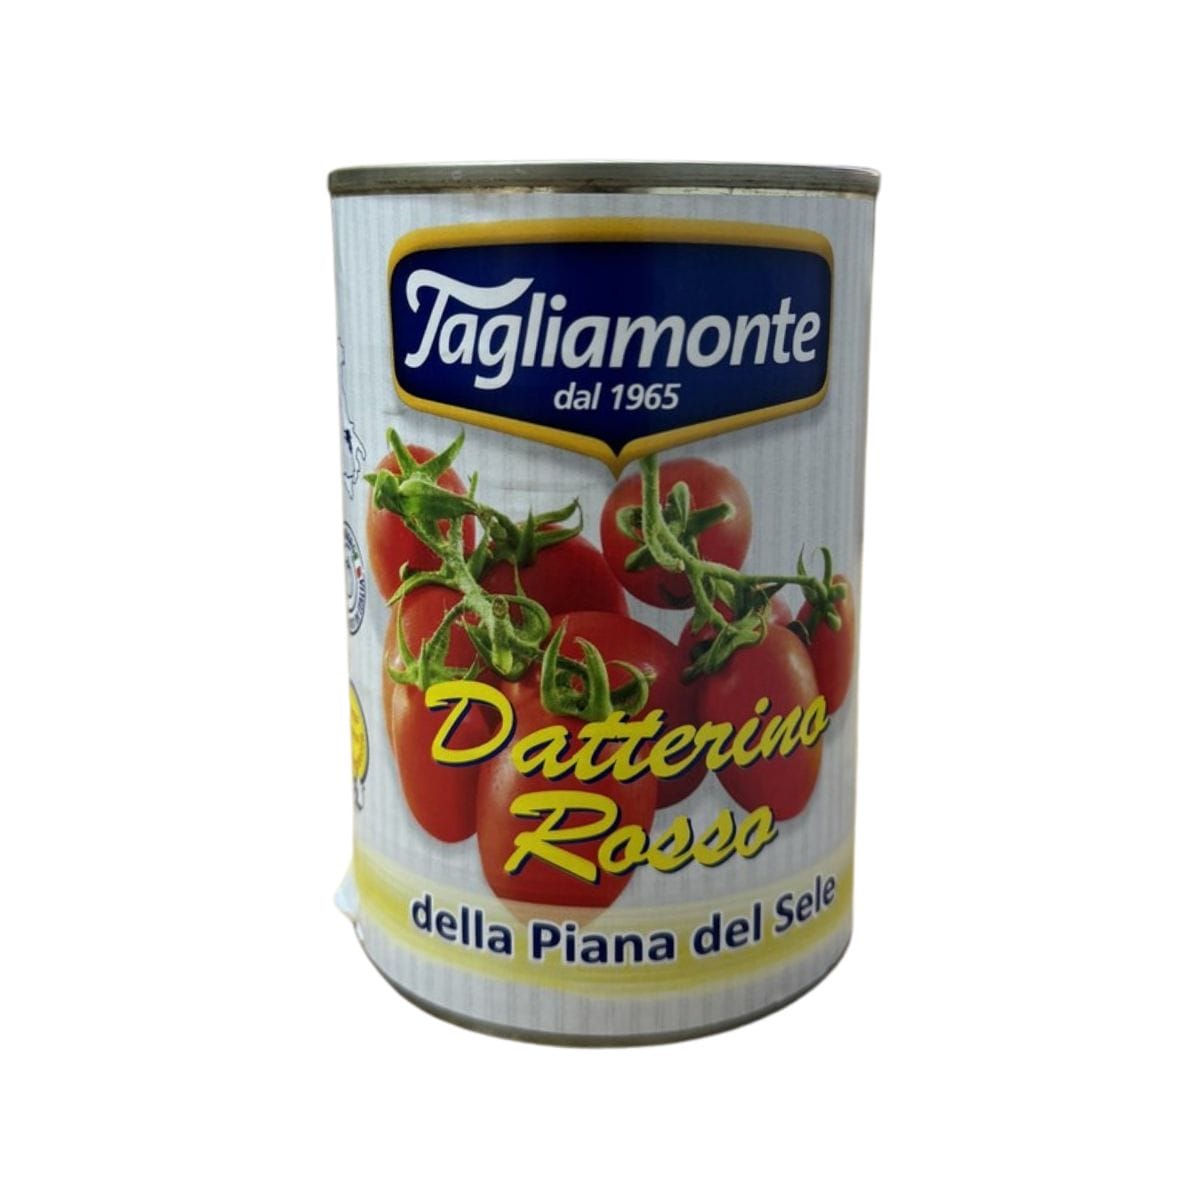 Tagliamonte Datterino Rosso della Piana de Sele - 400 gr